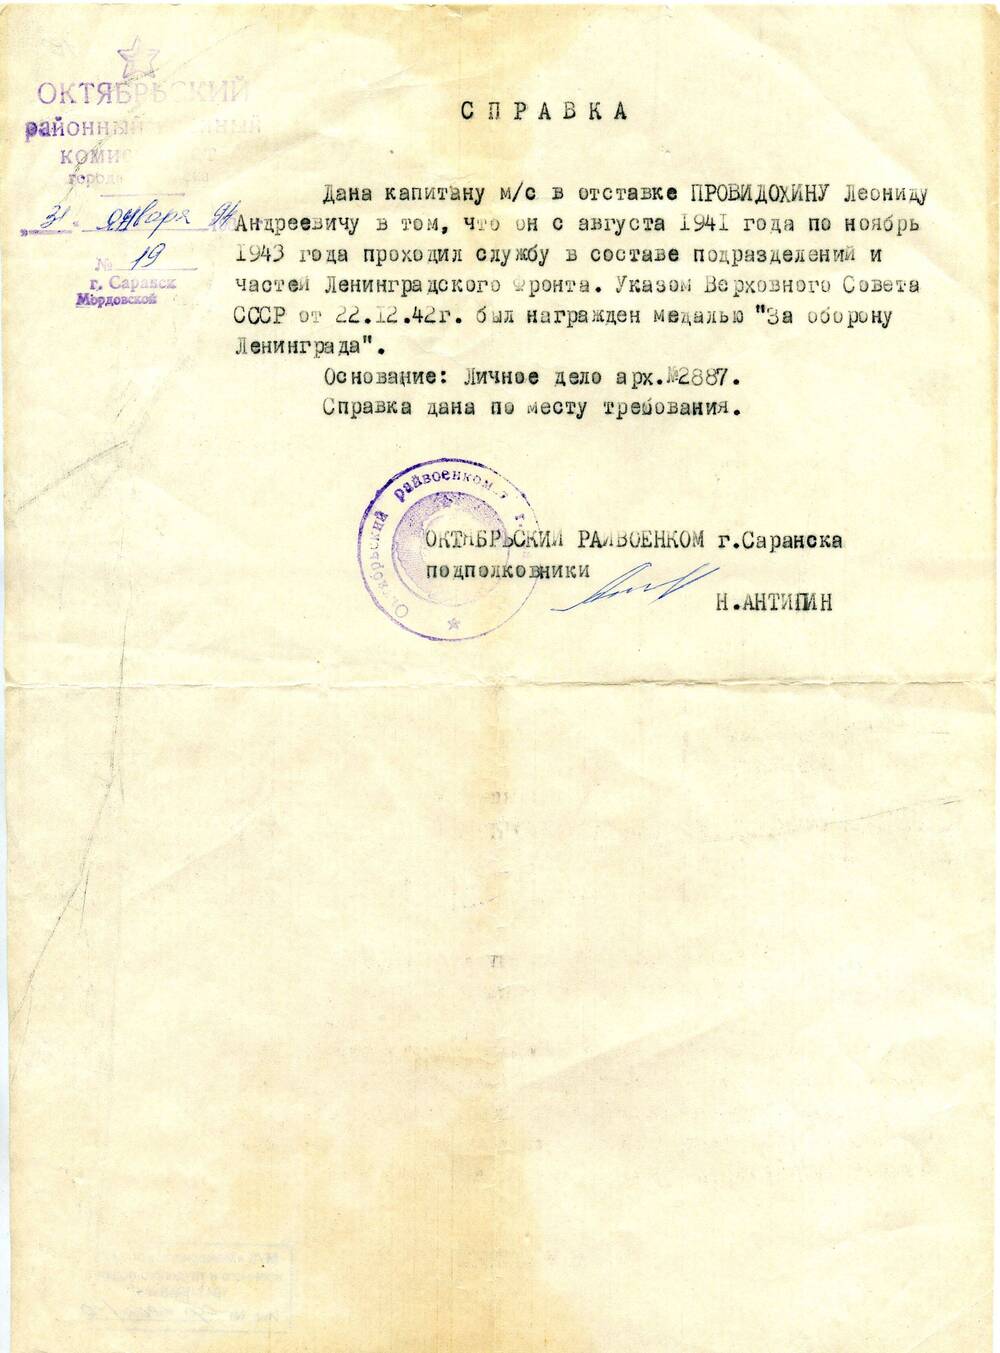 Справка №19 выдана капитану м/с в отставке Провидохину Леониду Андреевичу в том, чо он с августа 1941 по ноябрь 1943 гг. проходил службу в составе подразделений и частей Ленинградского фронта.